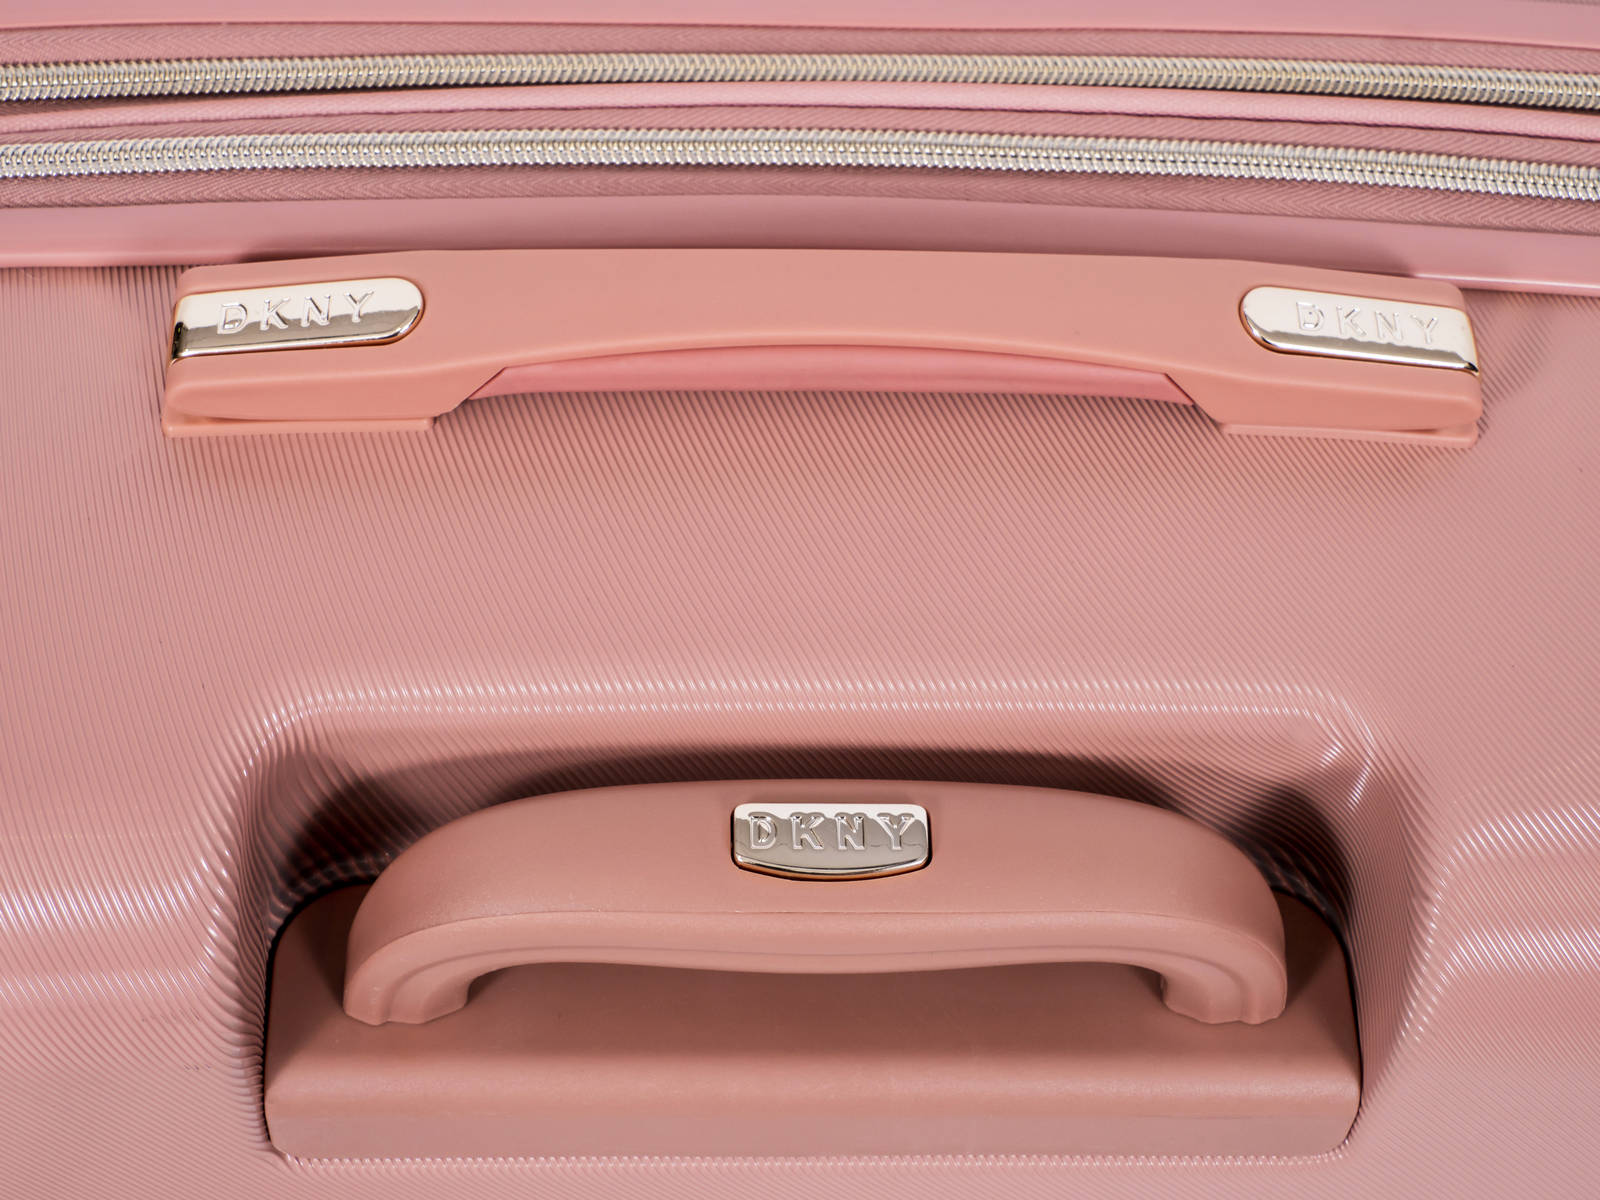 ✮✮ מזוודה בינונית 24" אופנתית מבית מעצבת העל Donna Karan DKNY דגם SIX FOUR ONE